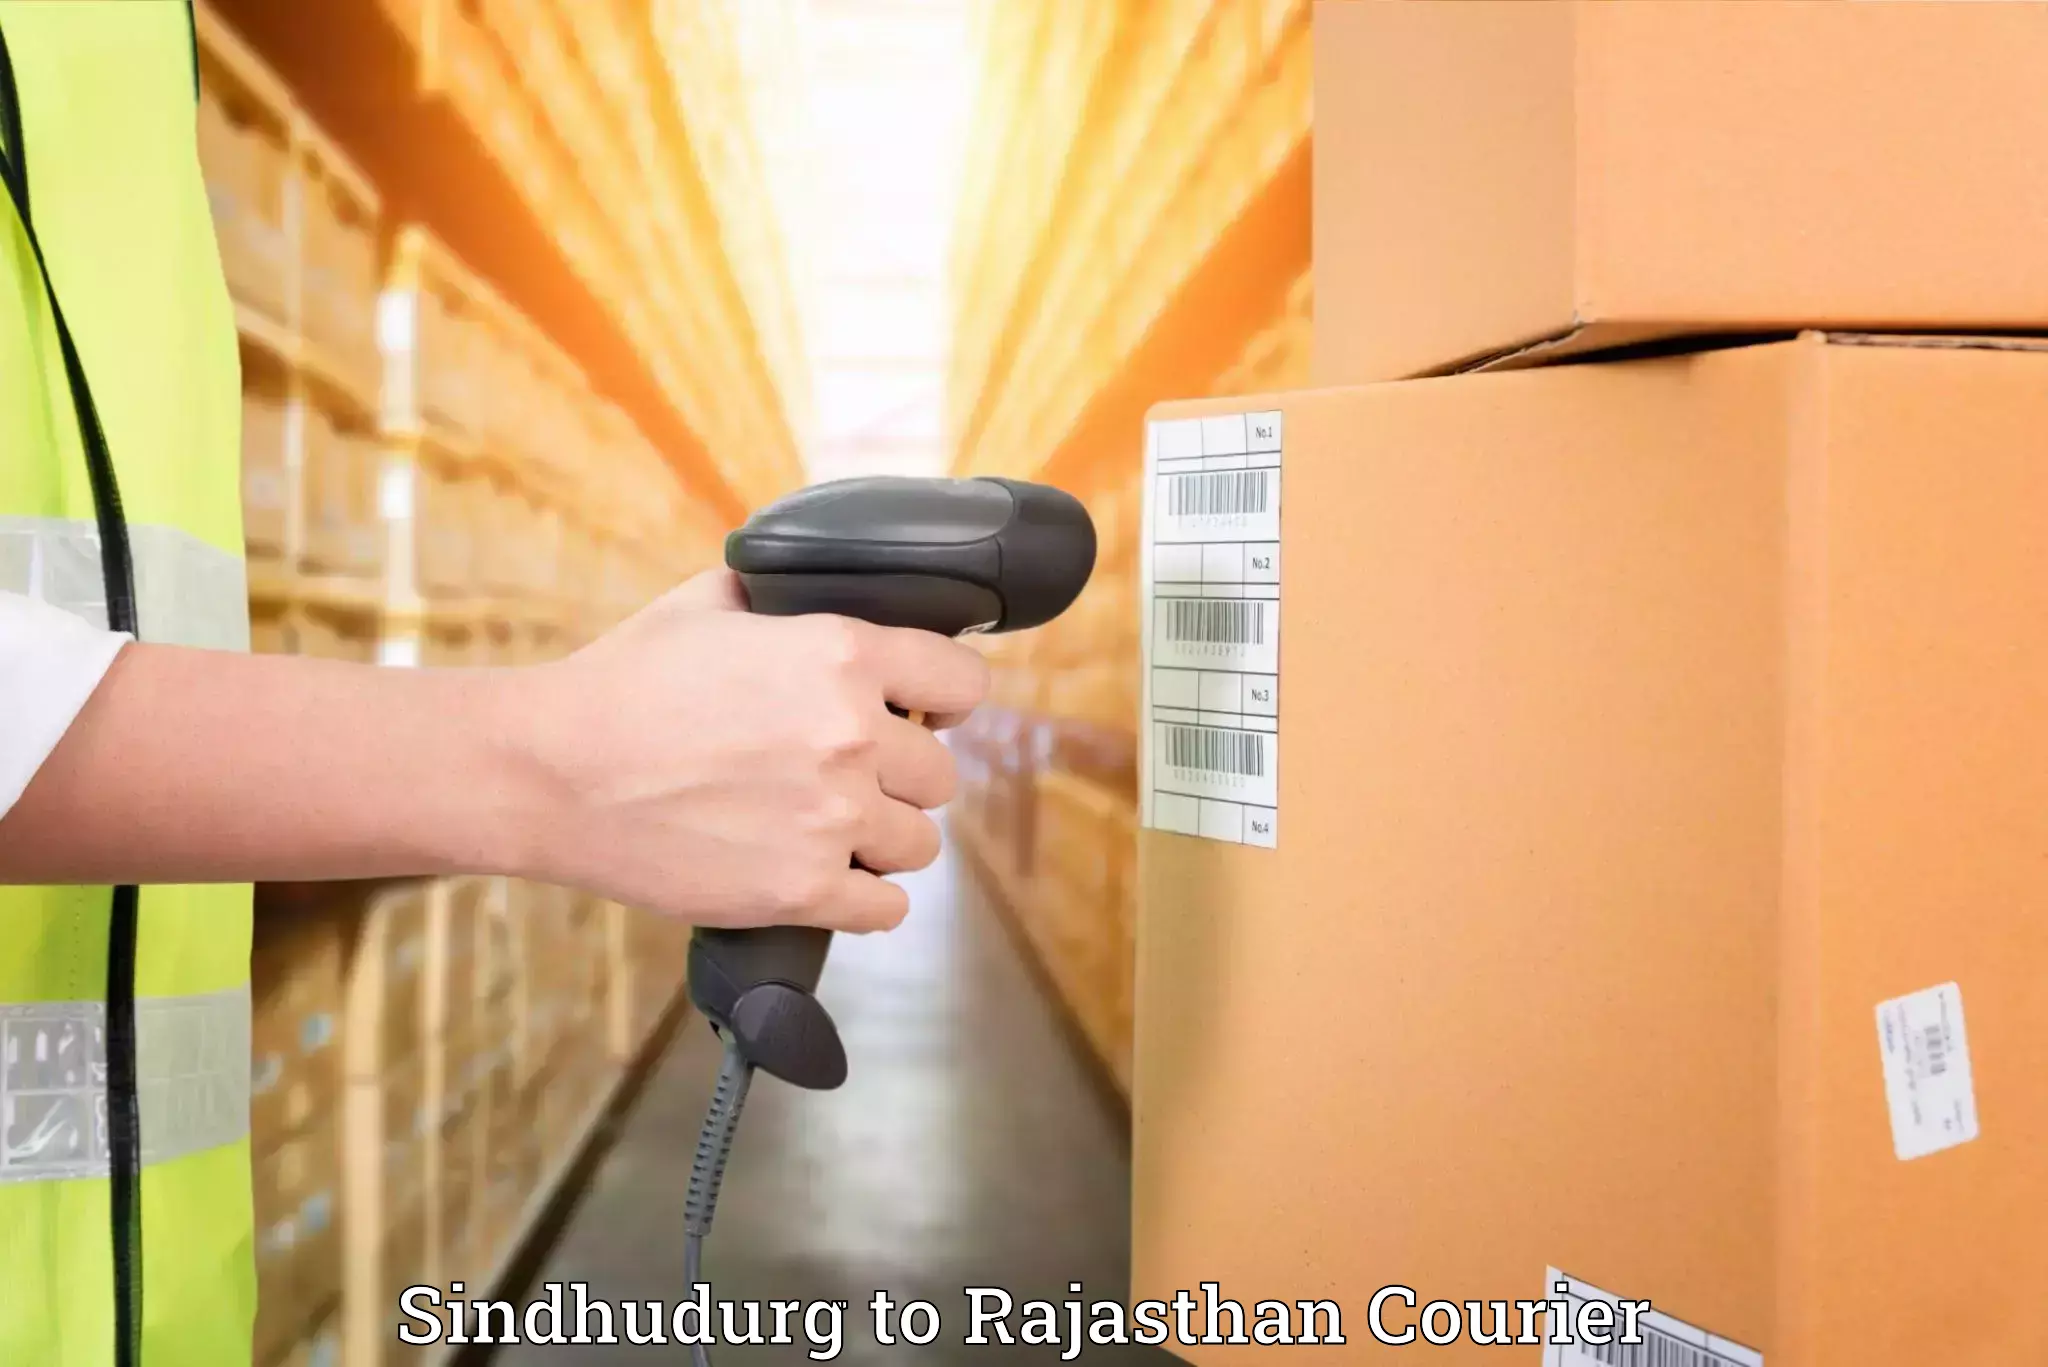 Furniture moving experts Sindhudurg to Pali